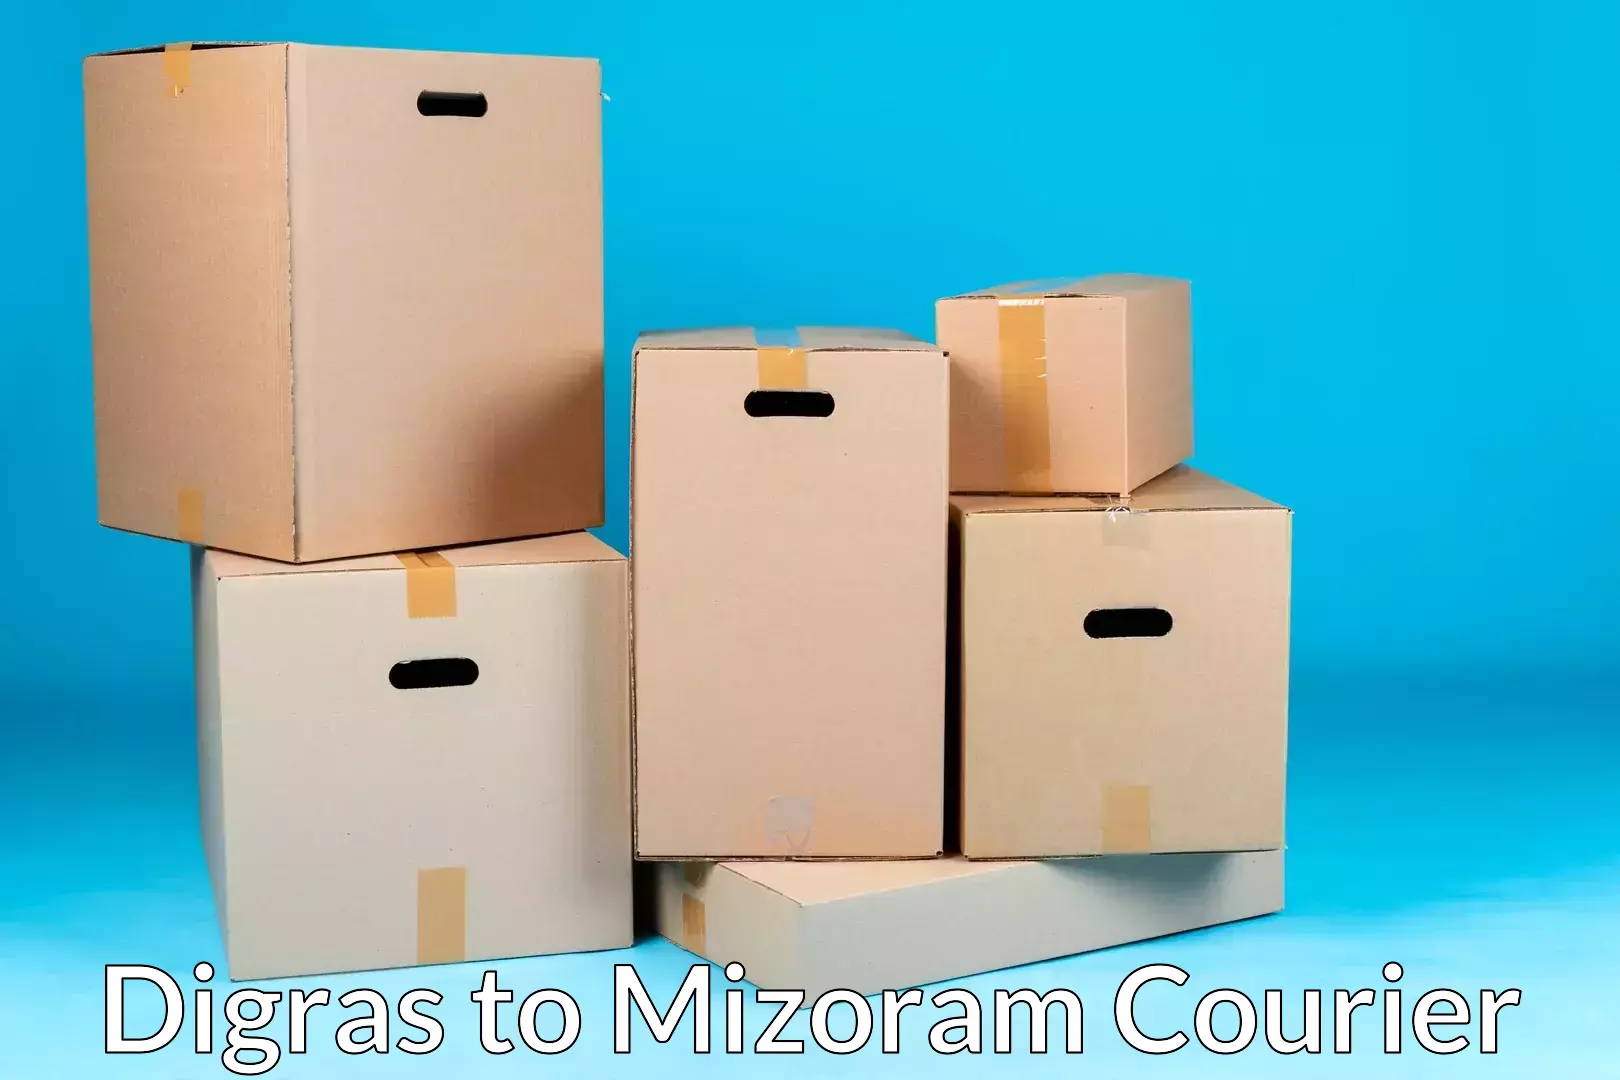 Seamless moving process Digras to Mizoram